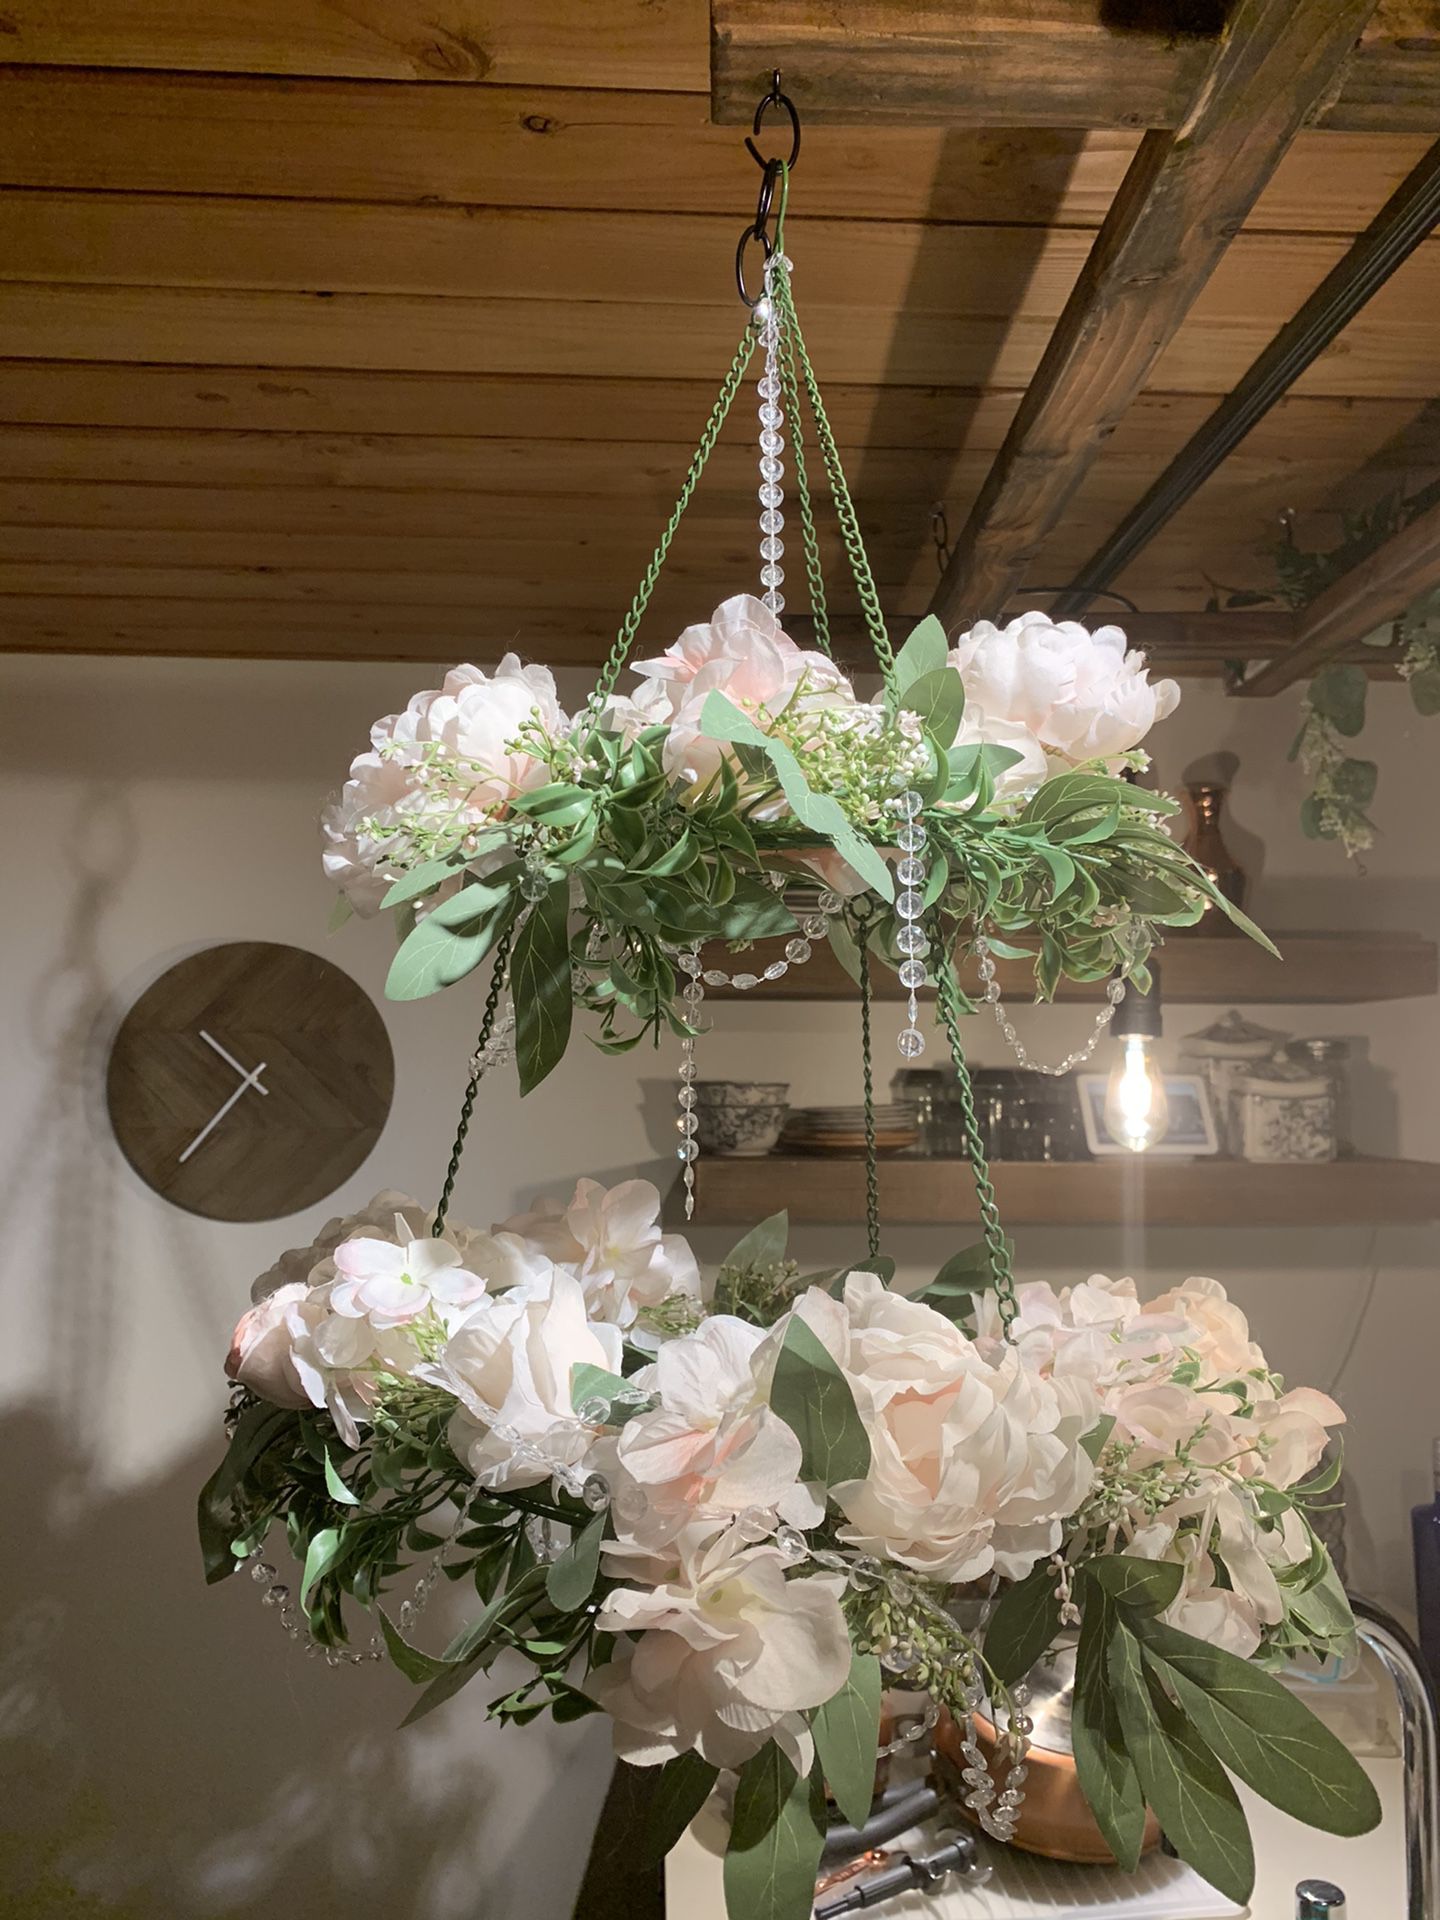 Hanging flower chandelier decoration - ballard